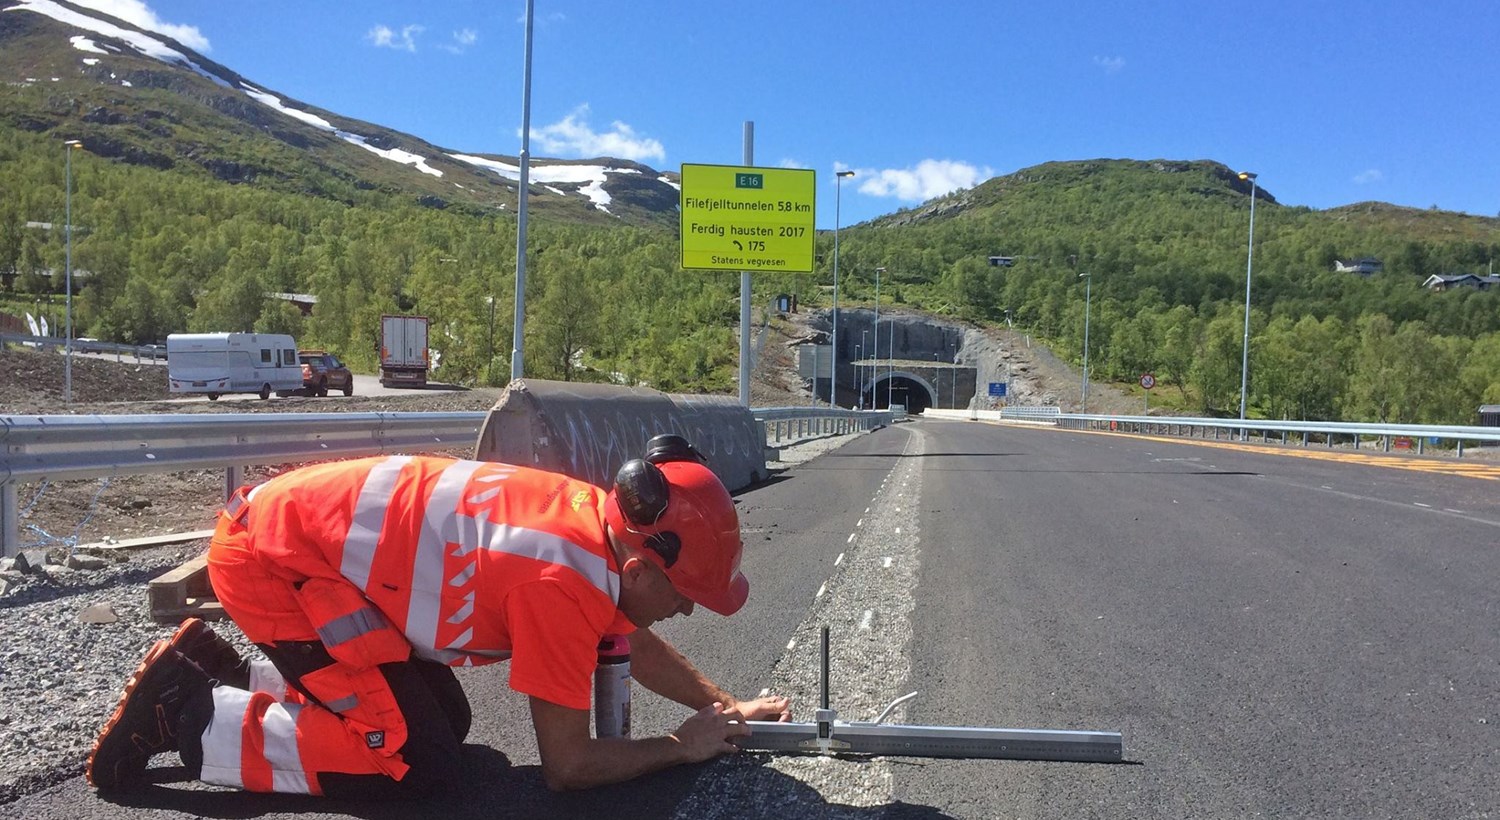 Arbeidet med tunellen på Filefjell vert ferdigstilt denne sumaren. 29. september er det klart for opning. Foto: Statens Vegvesen.